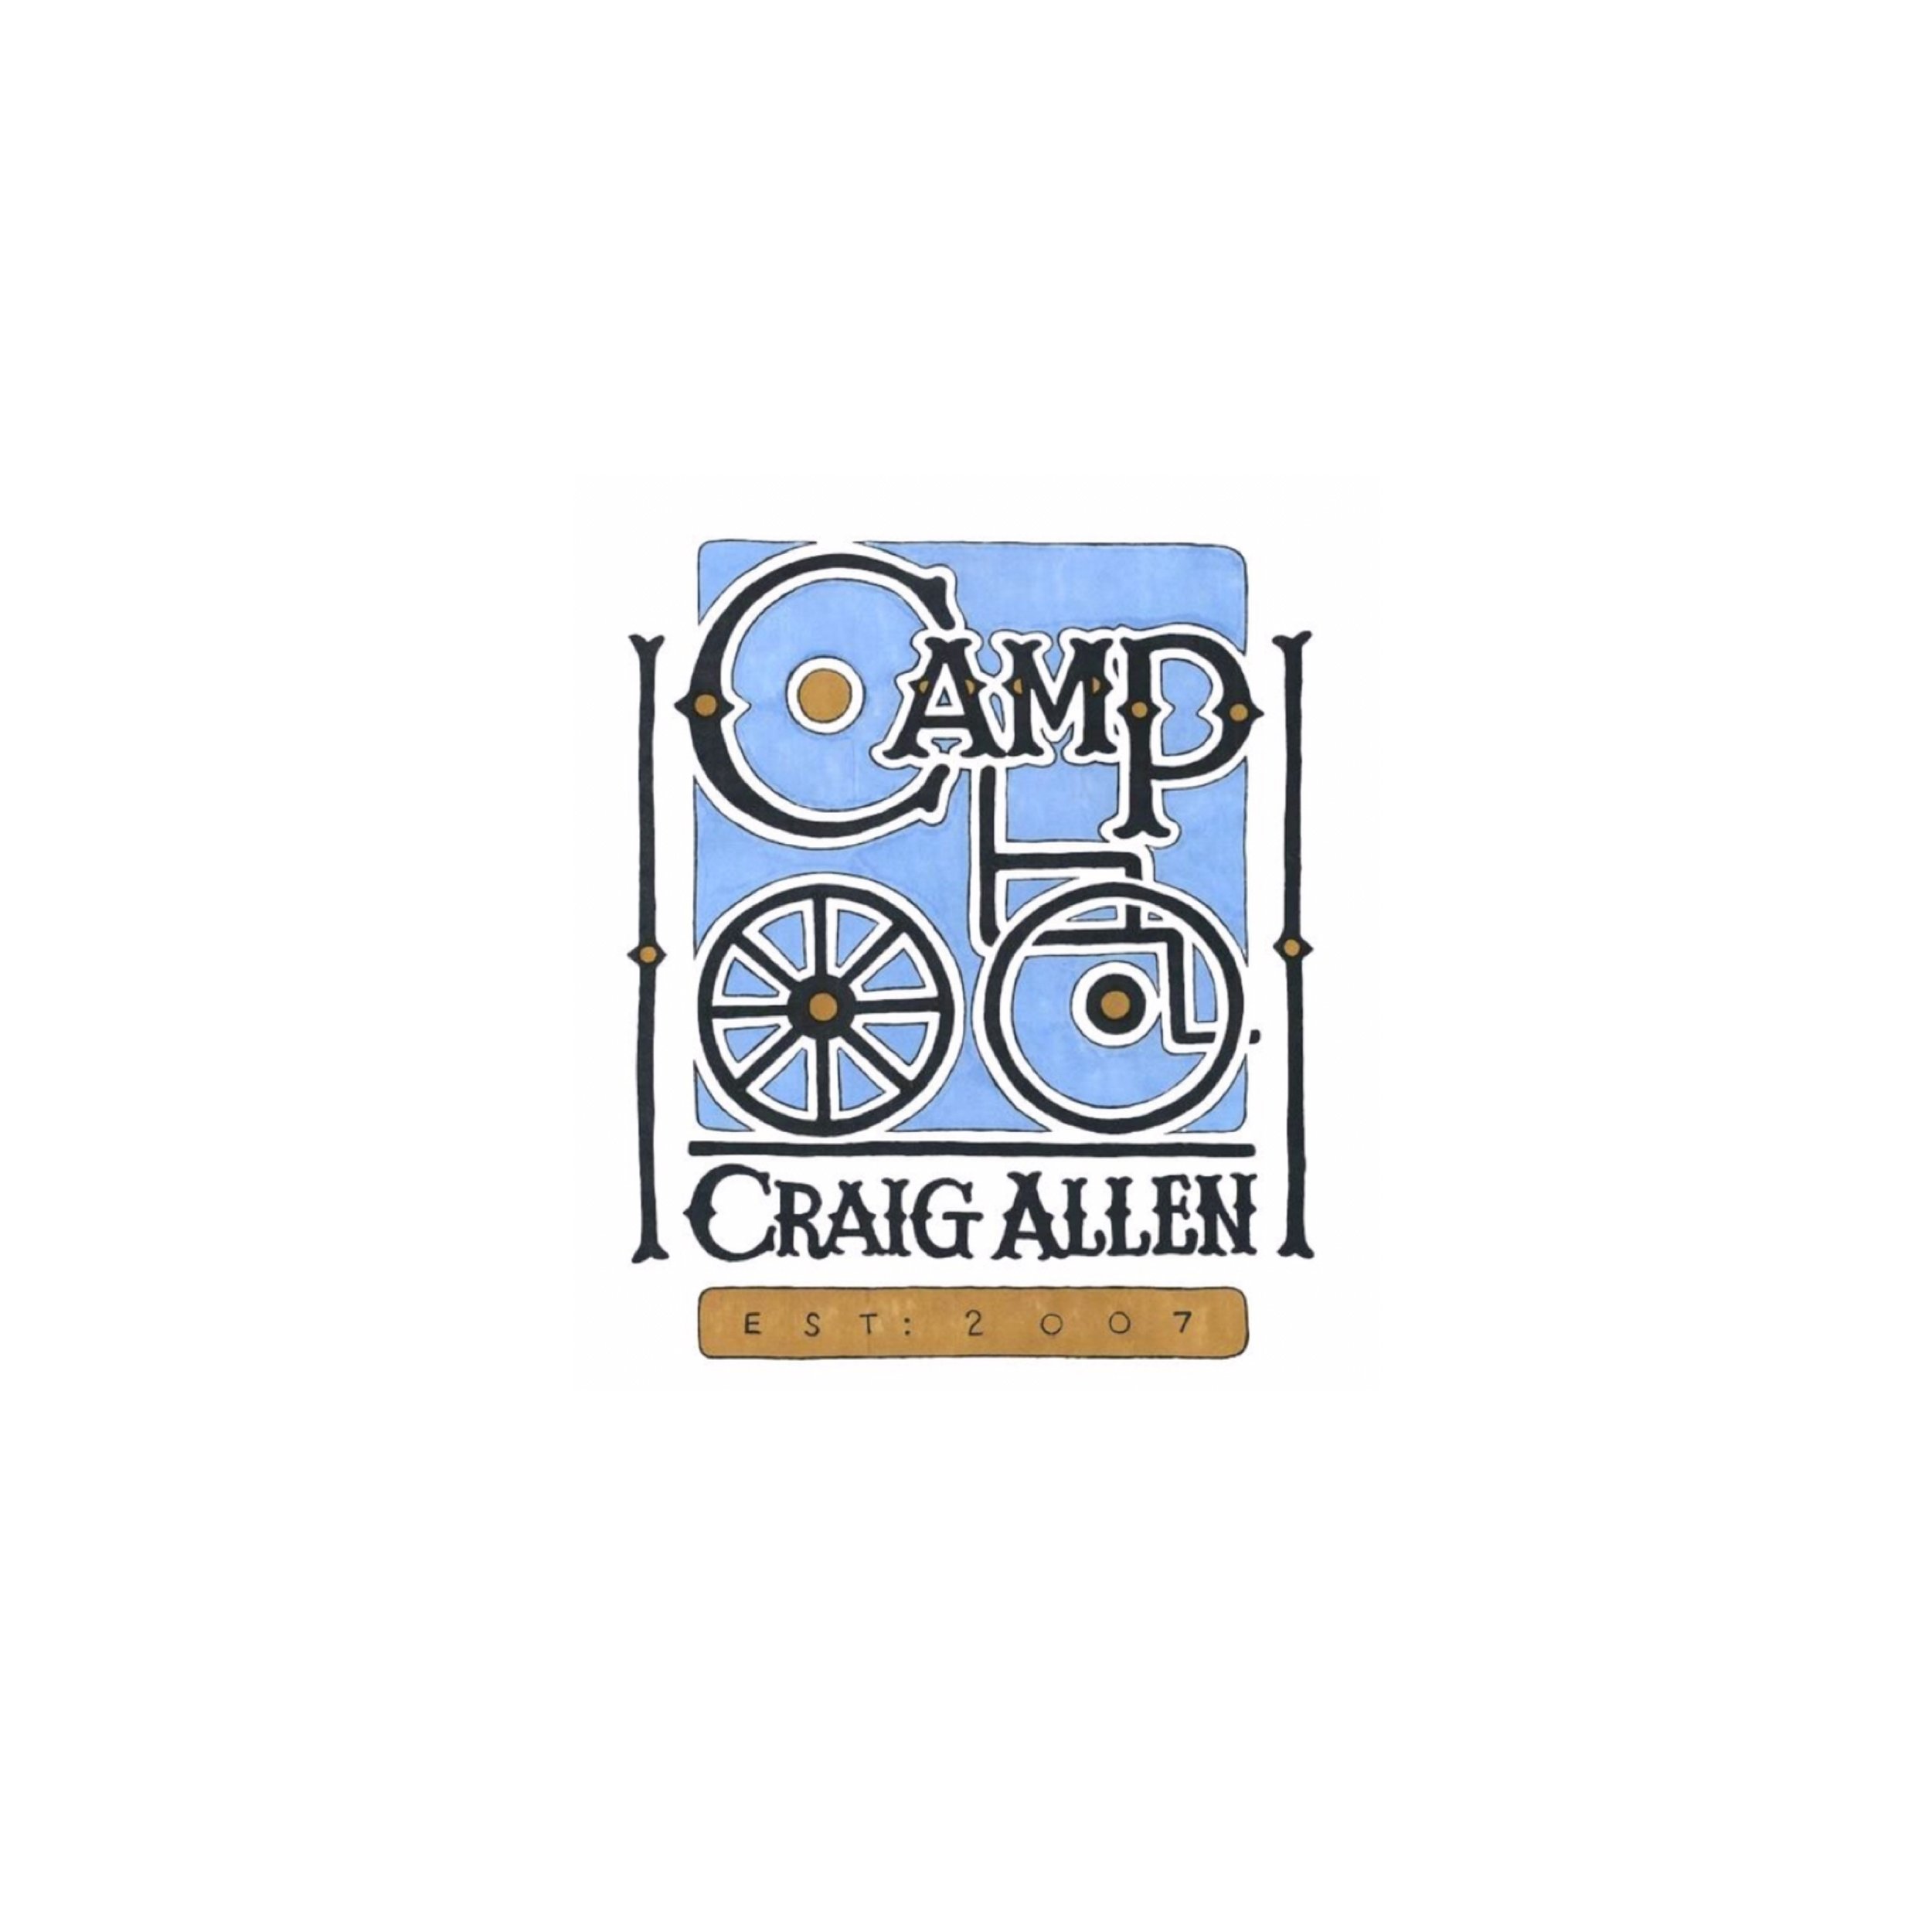 Camp Craig Allen.JPG